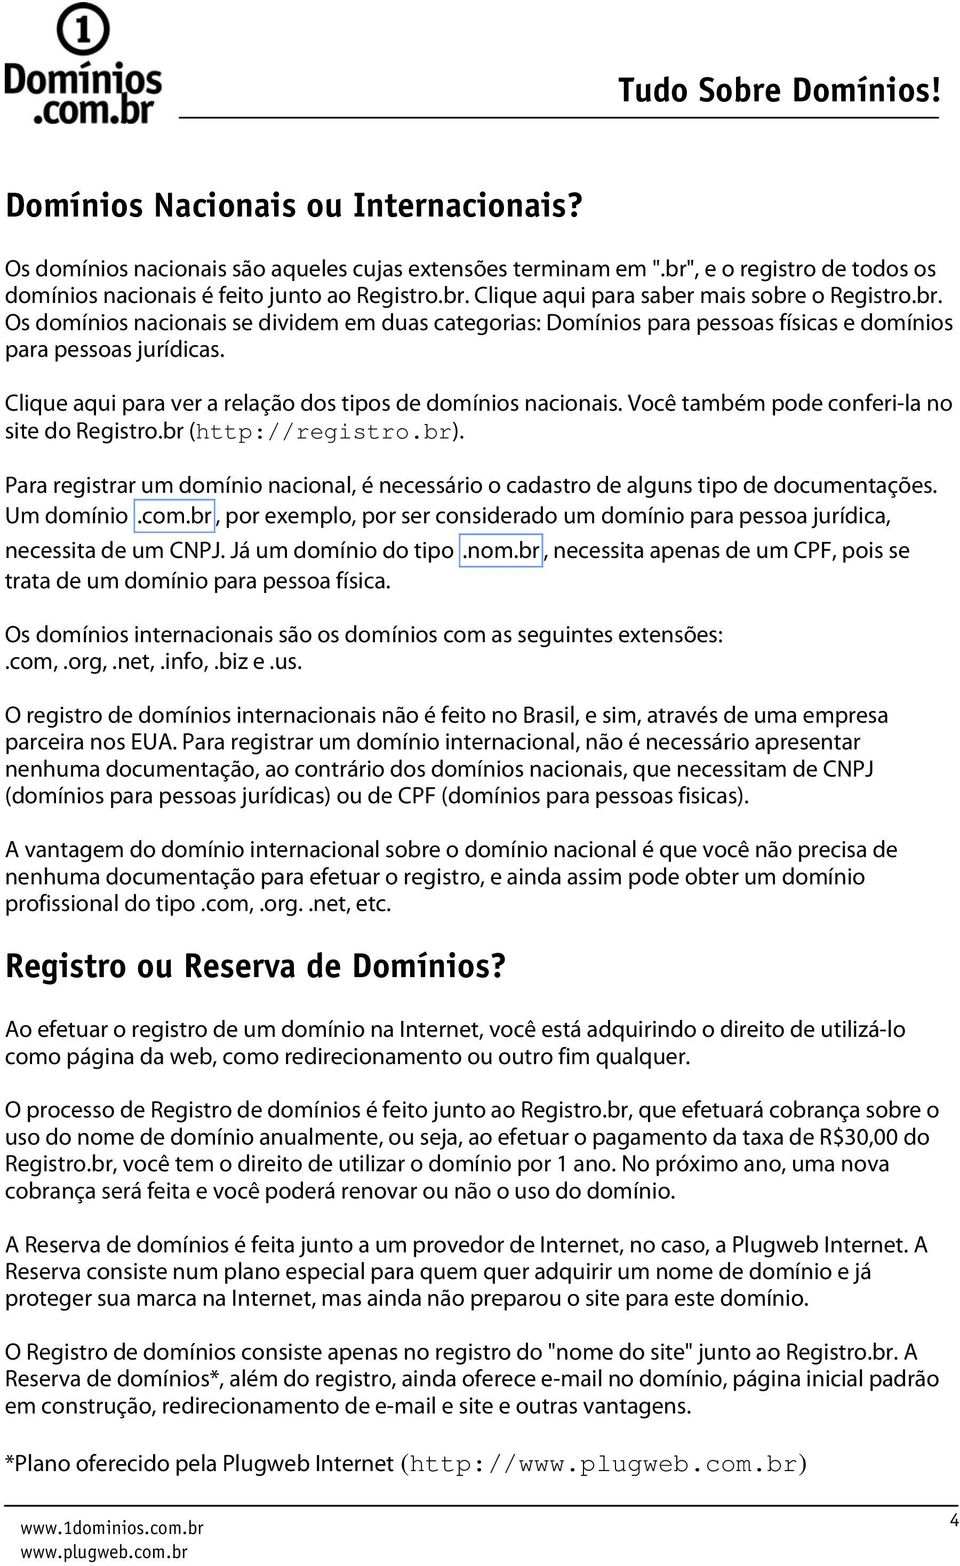 Você também pode conferi-la no site do Registro.br (http://registro.br). Para registrar um domínio nacional, é necessário o cadastro de alguns tipo de documentações. Um domínio.com.